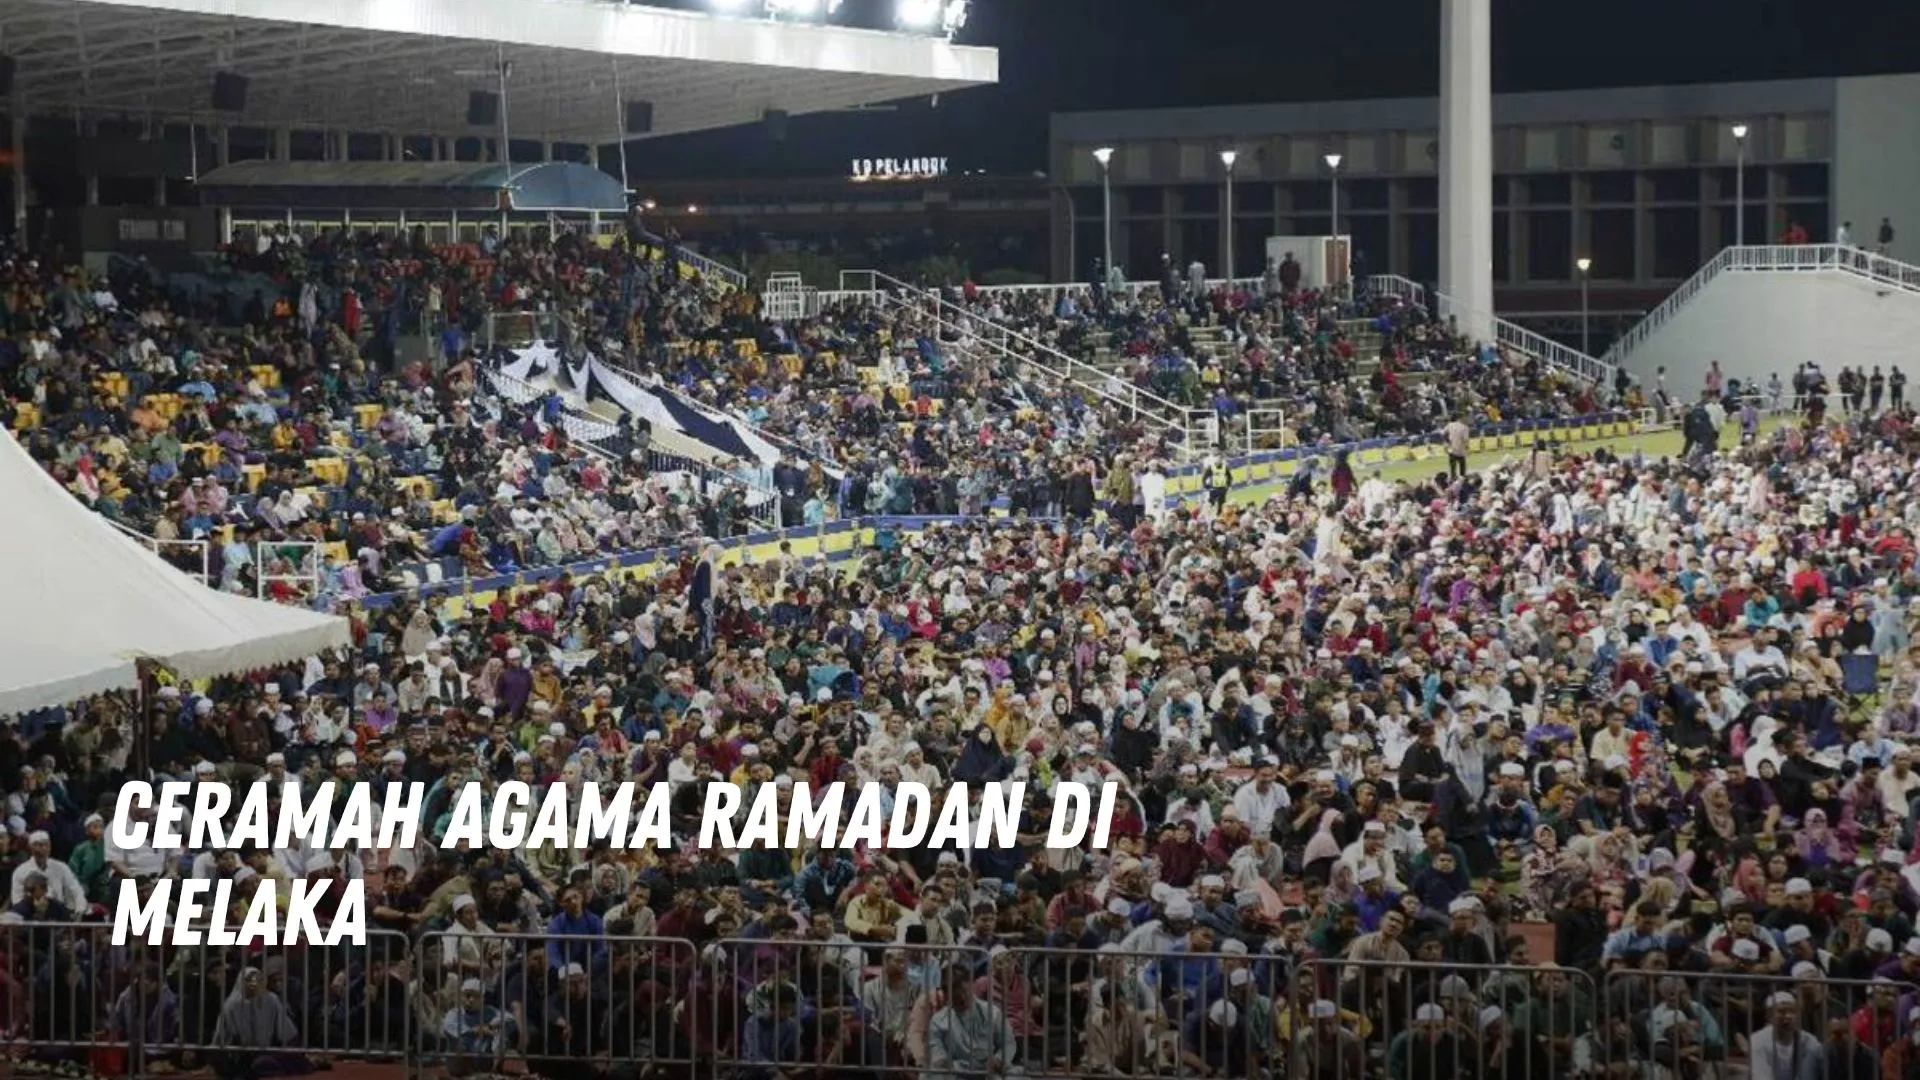 Ceramah Agama Ramadan di Melaka Malaysia